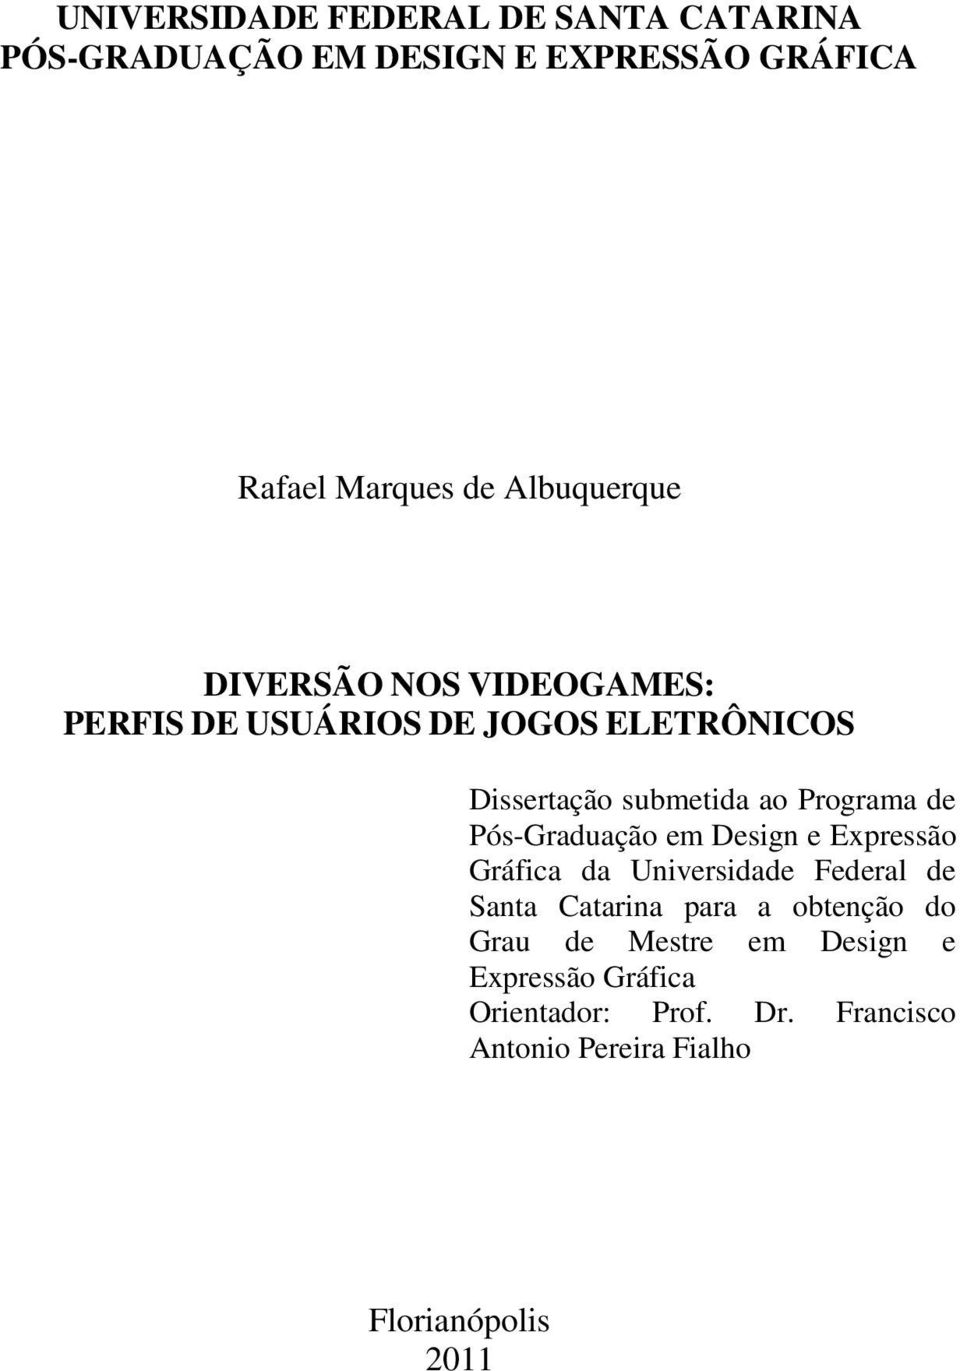 Programa de Pós-Graduação em Design e Expressão Gráfica da Universidade Federal de Santa Catarina para a